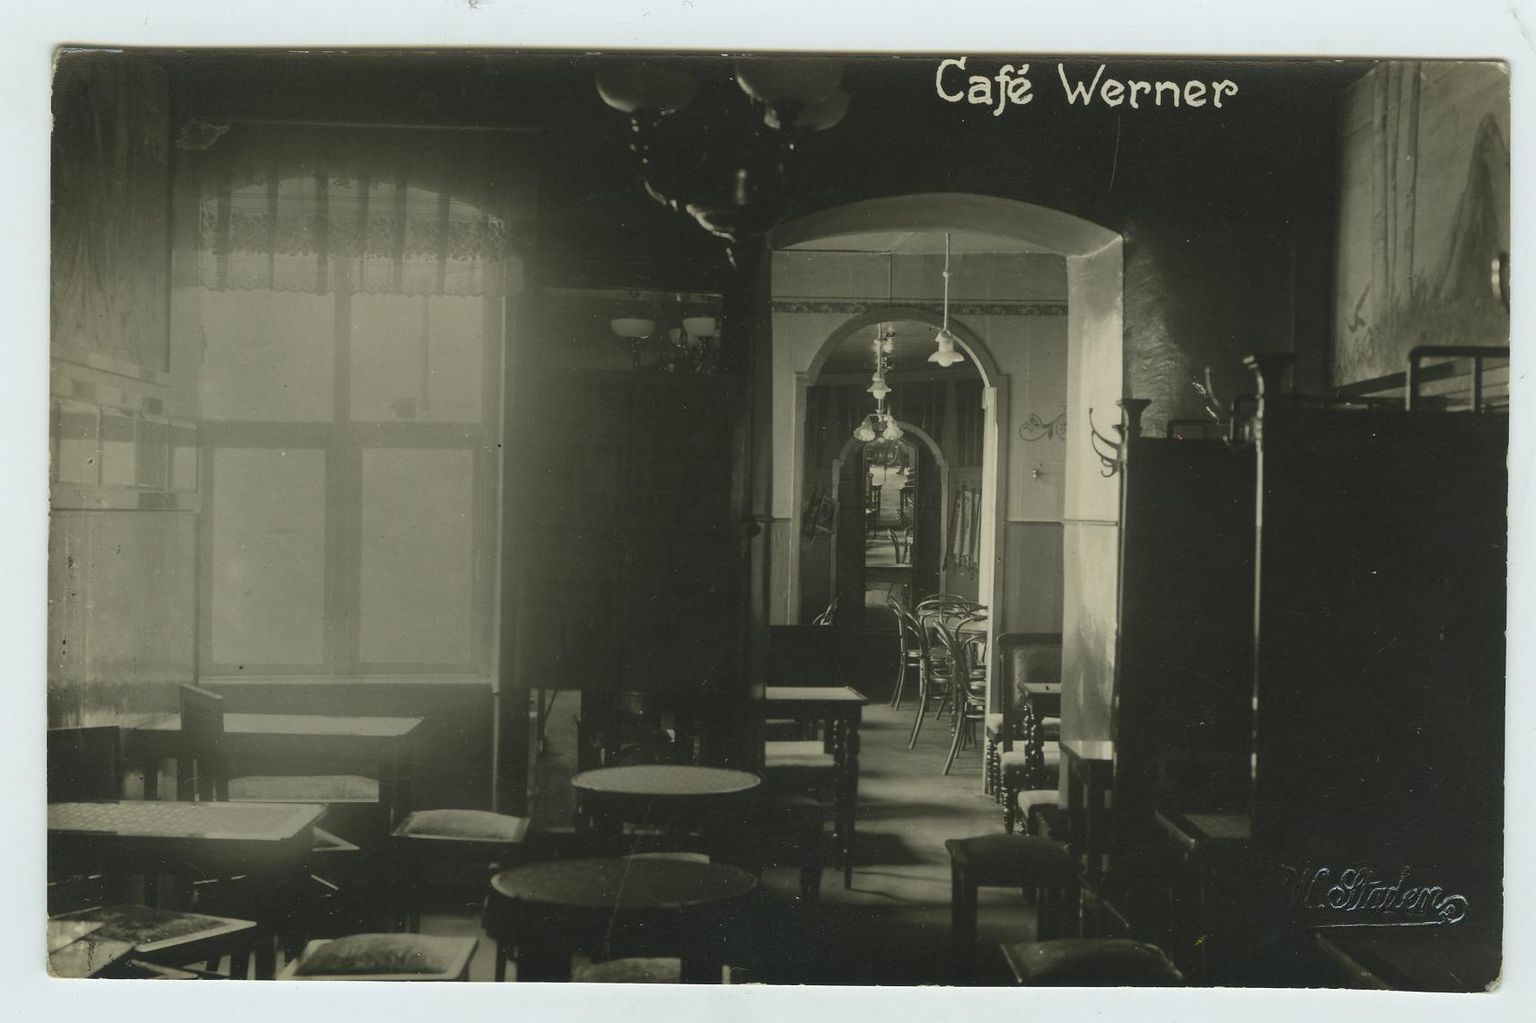 Wernerile iseloomulikke vaheseintega sektsioone kutsuti vaguniks. Kohviku tagumine, suitsune ruum oli maletajate päralt. Mängiti ka doominot, tamkat ja teisi lauamänge. Andrus Rüütli erakogu